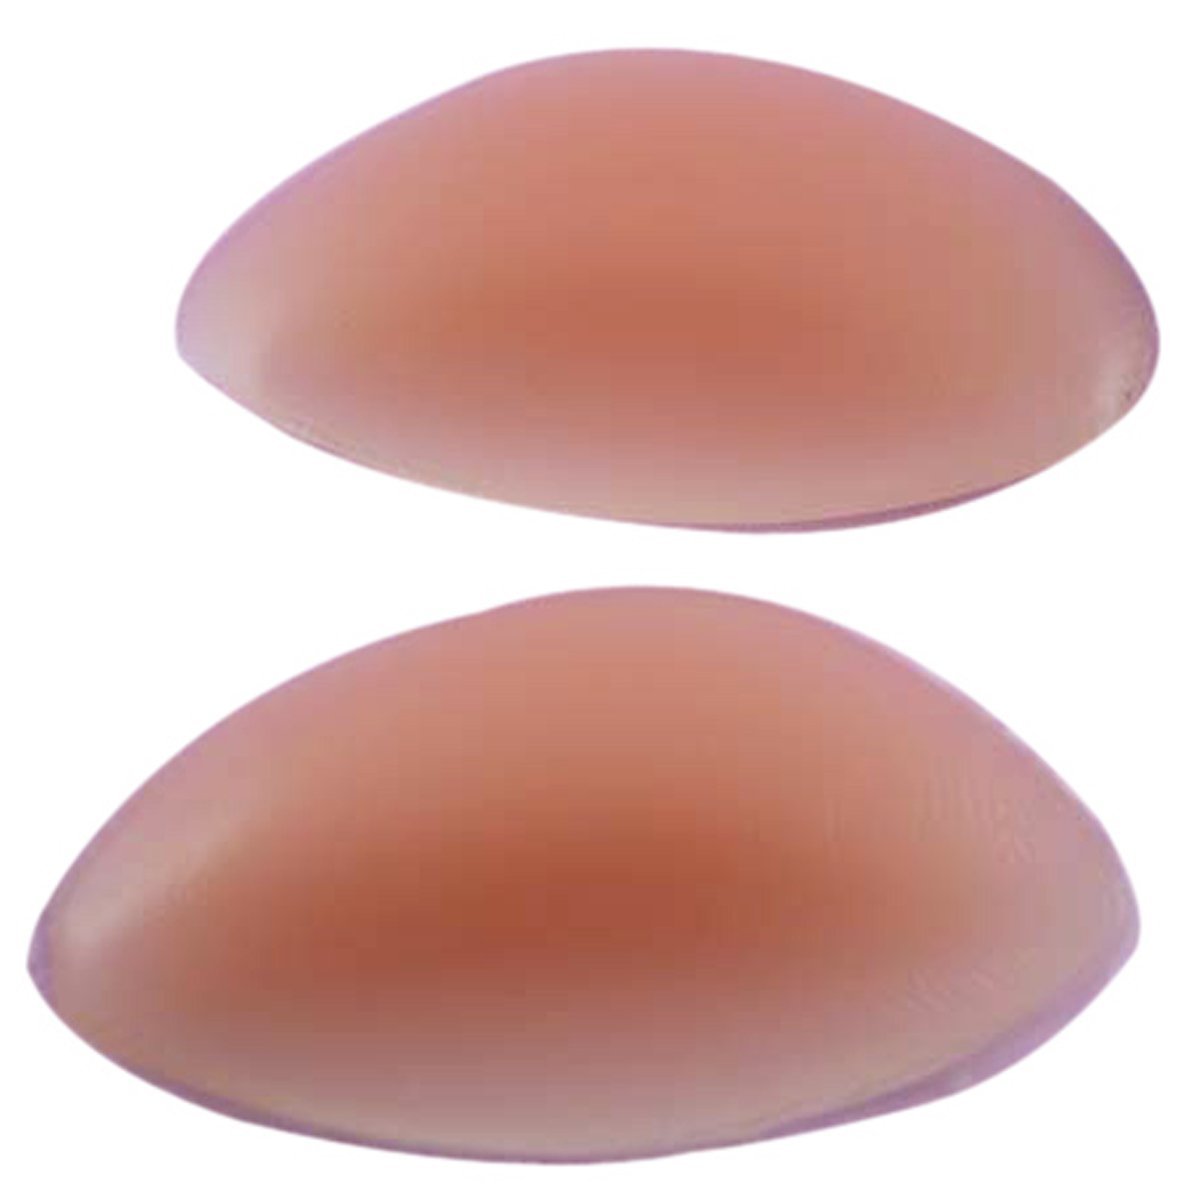 gel breast enhancers